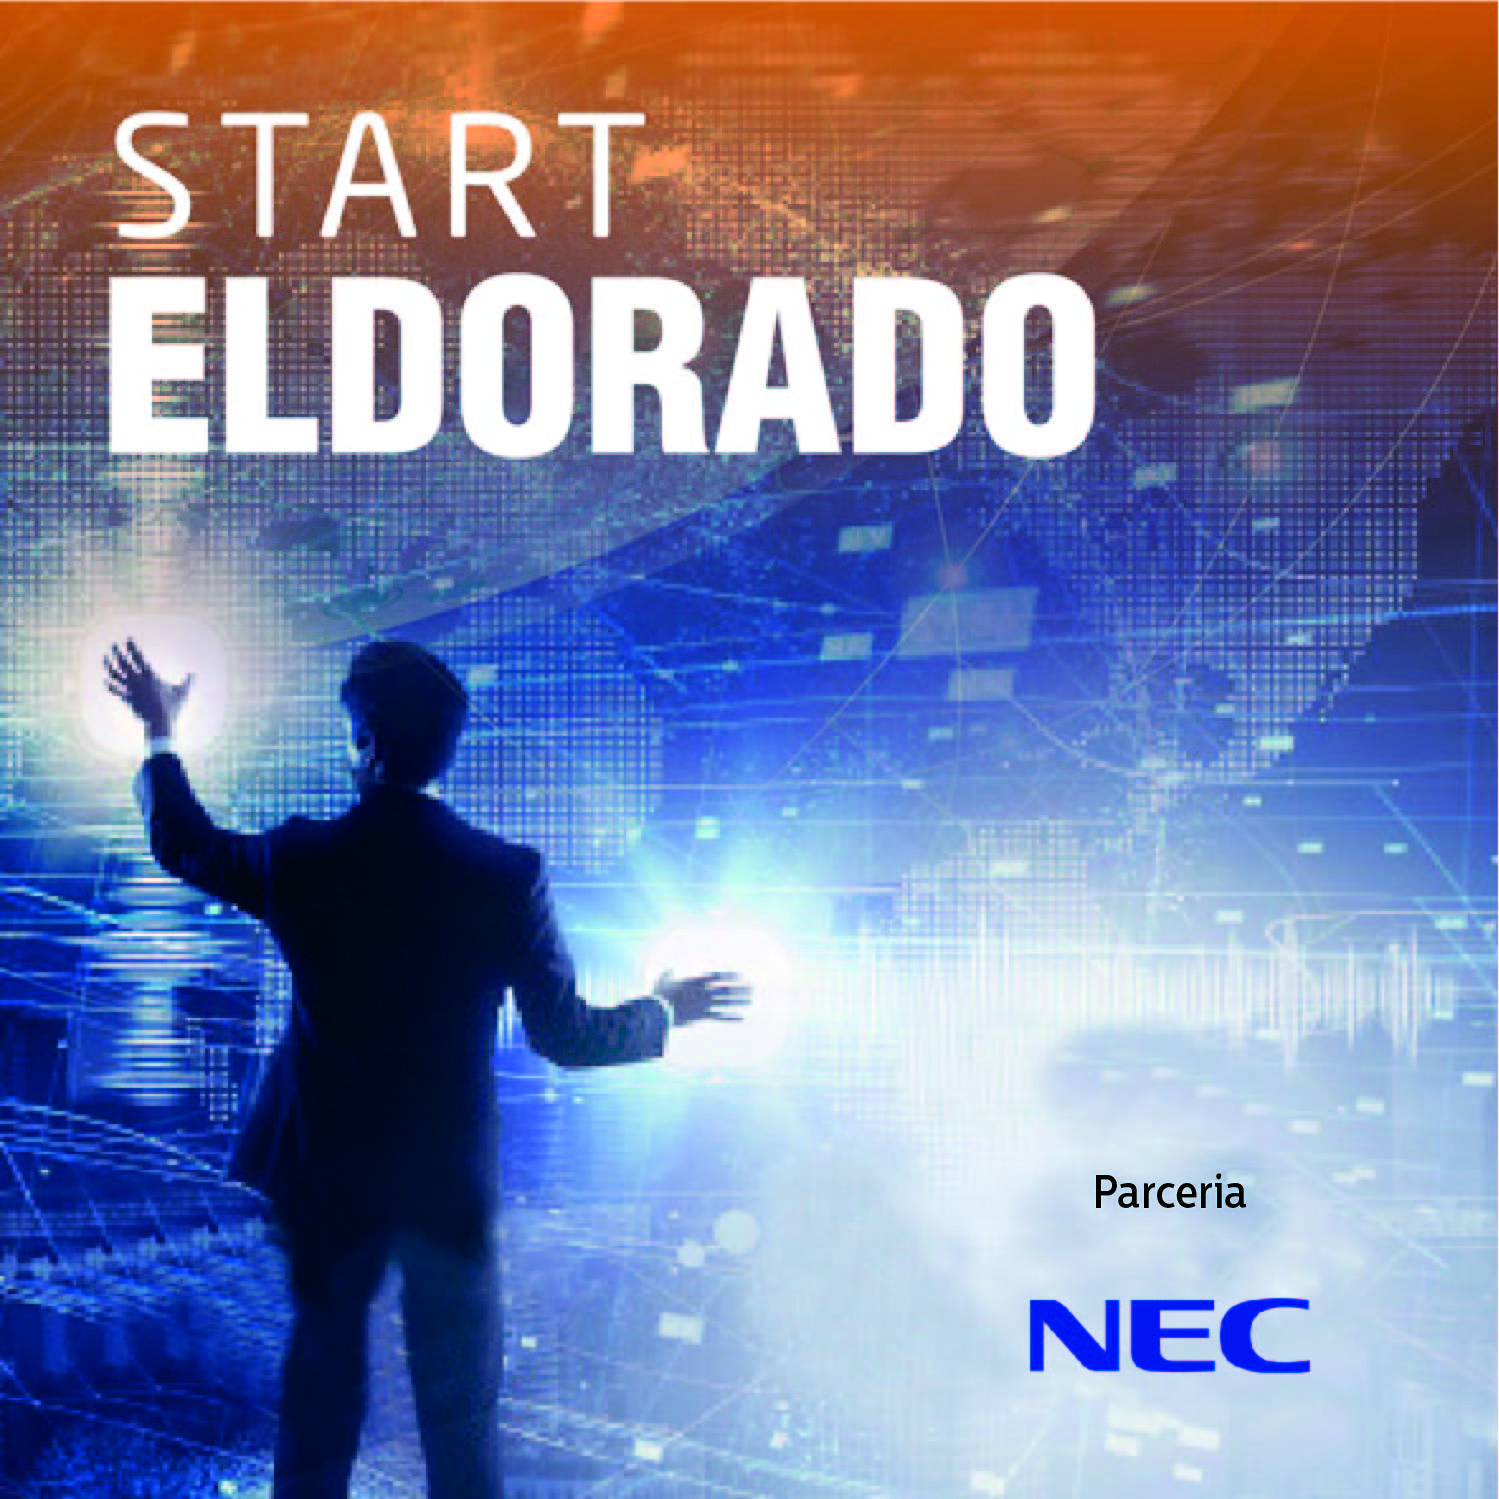 Tecnologia #240: #Start Eldorado: Inteligência artificial em nossas mãos